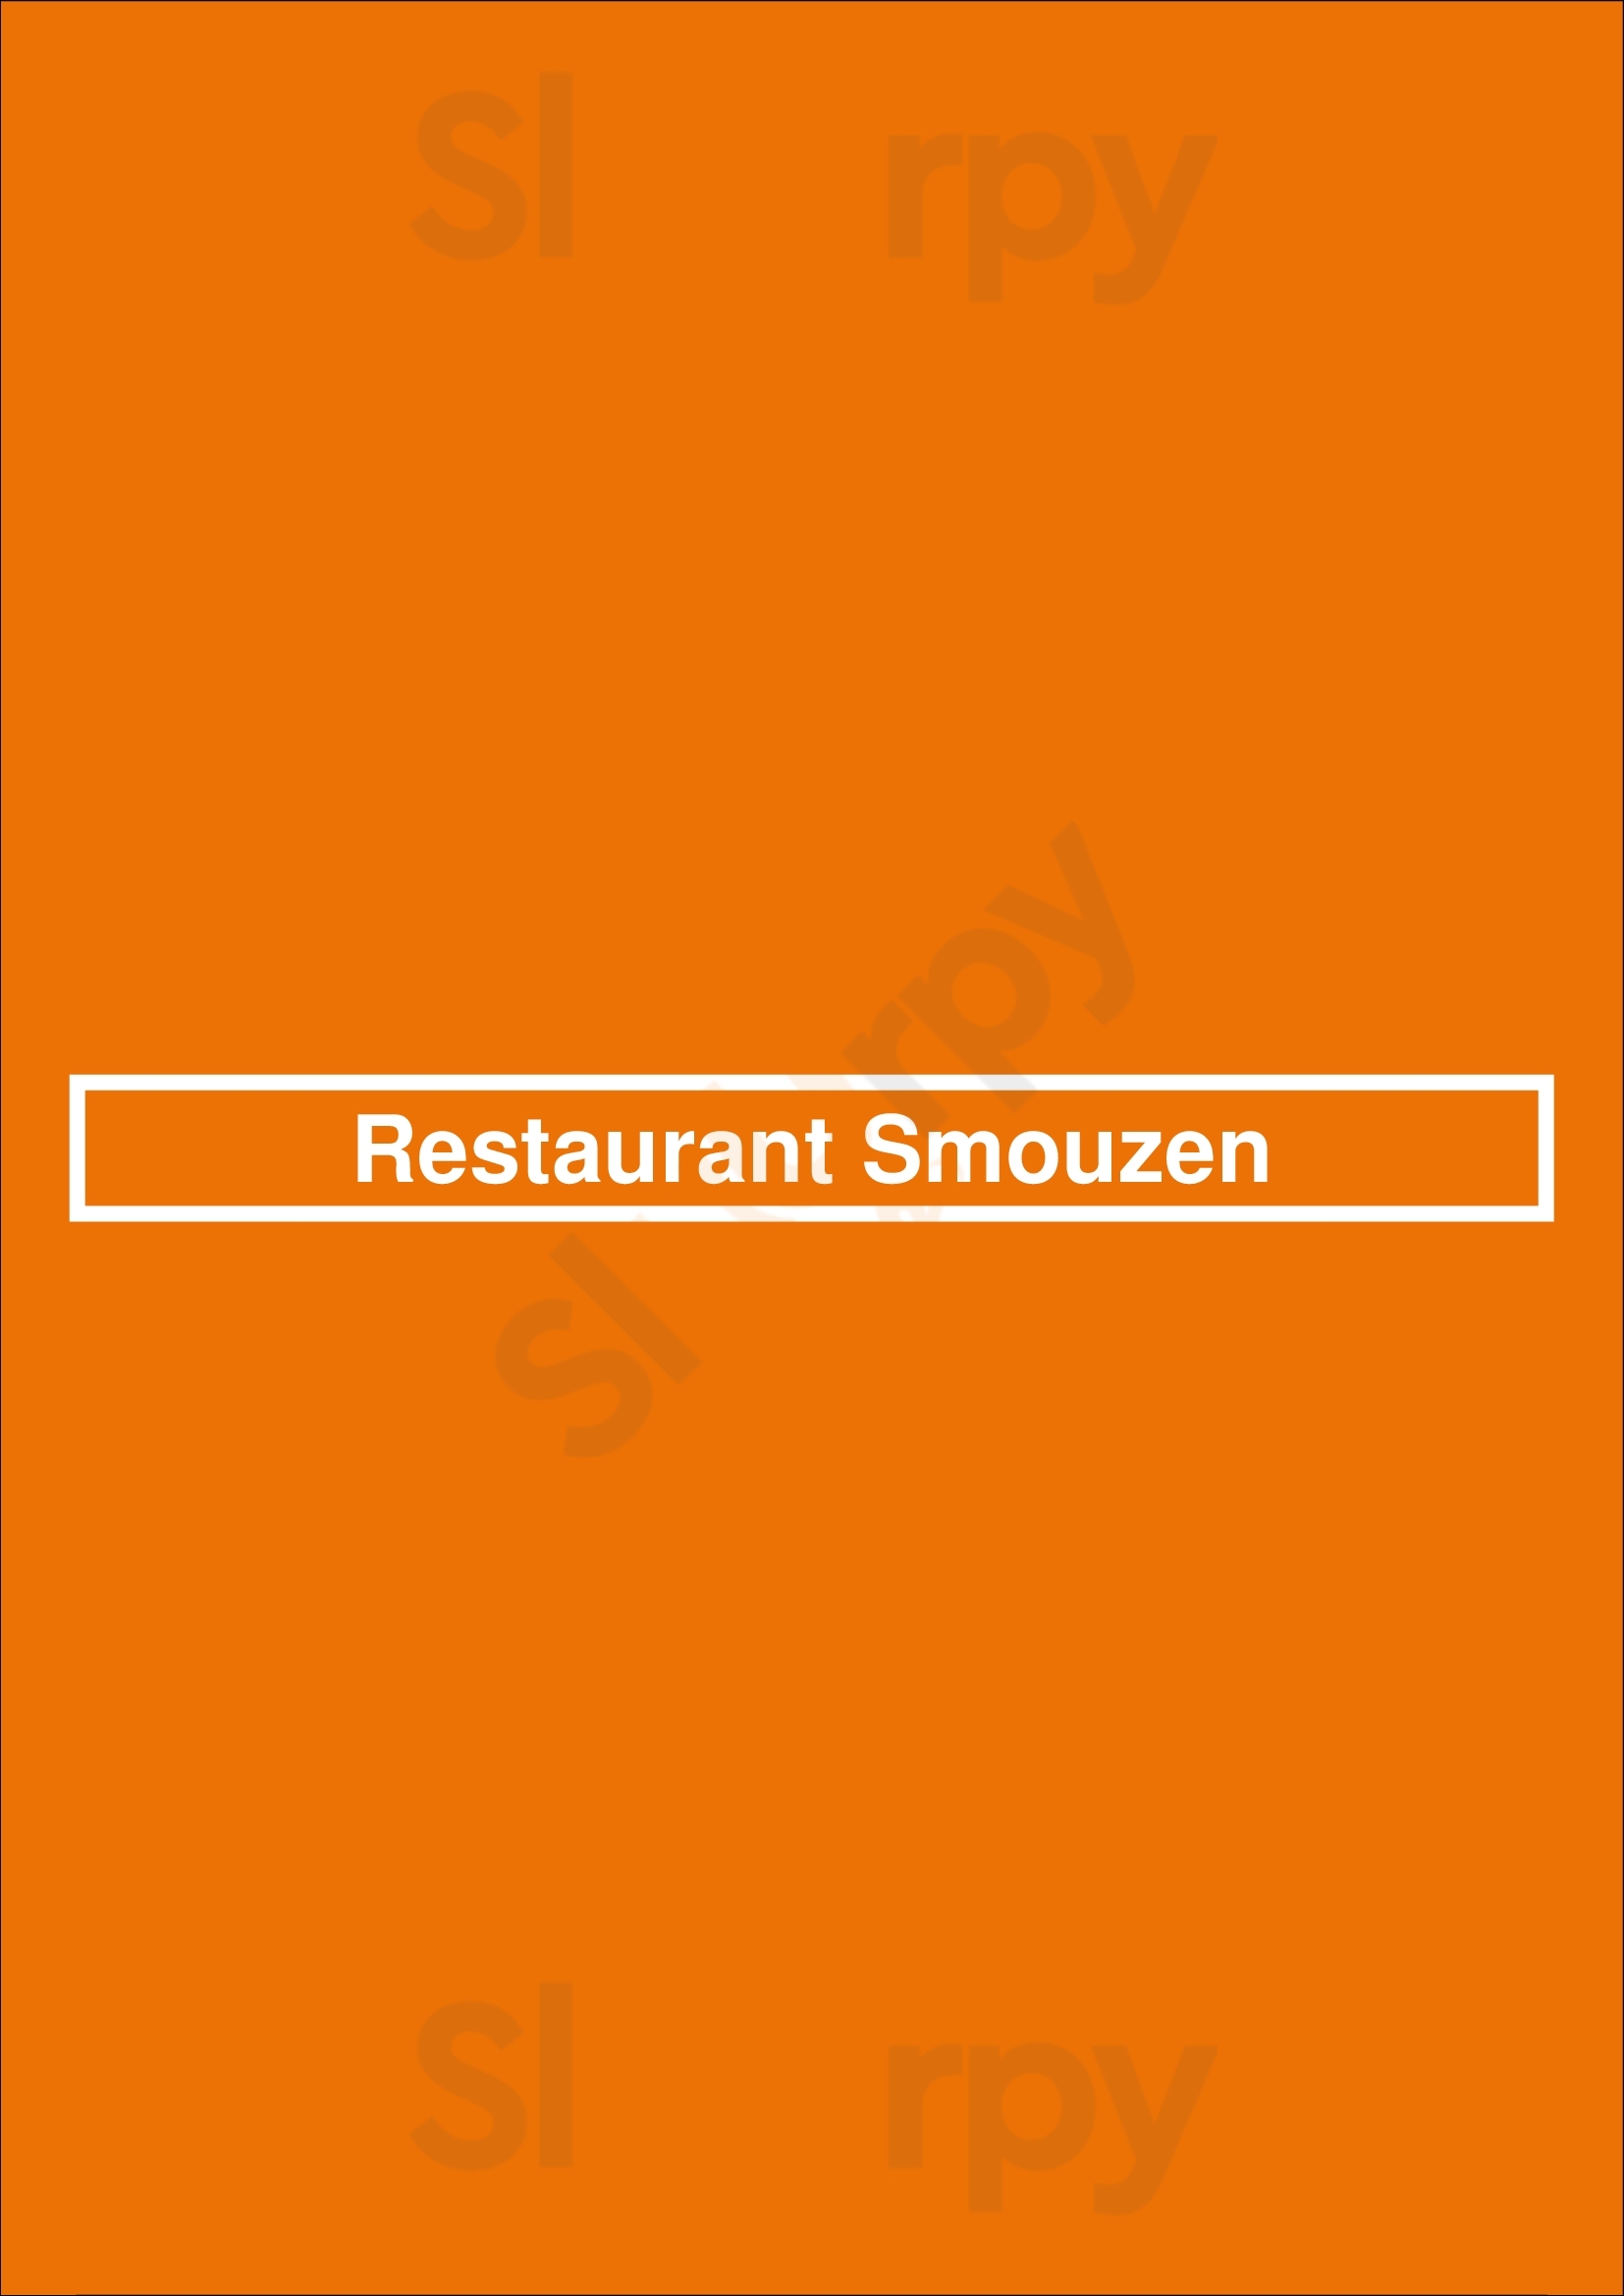 Restaurant Smouzen s-Heerenberg Menu - 1